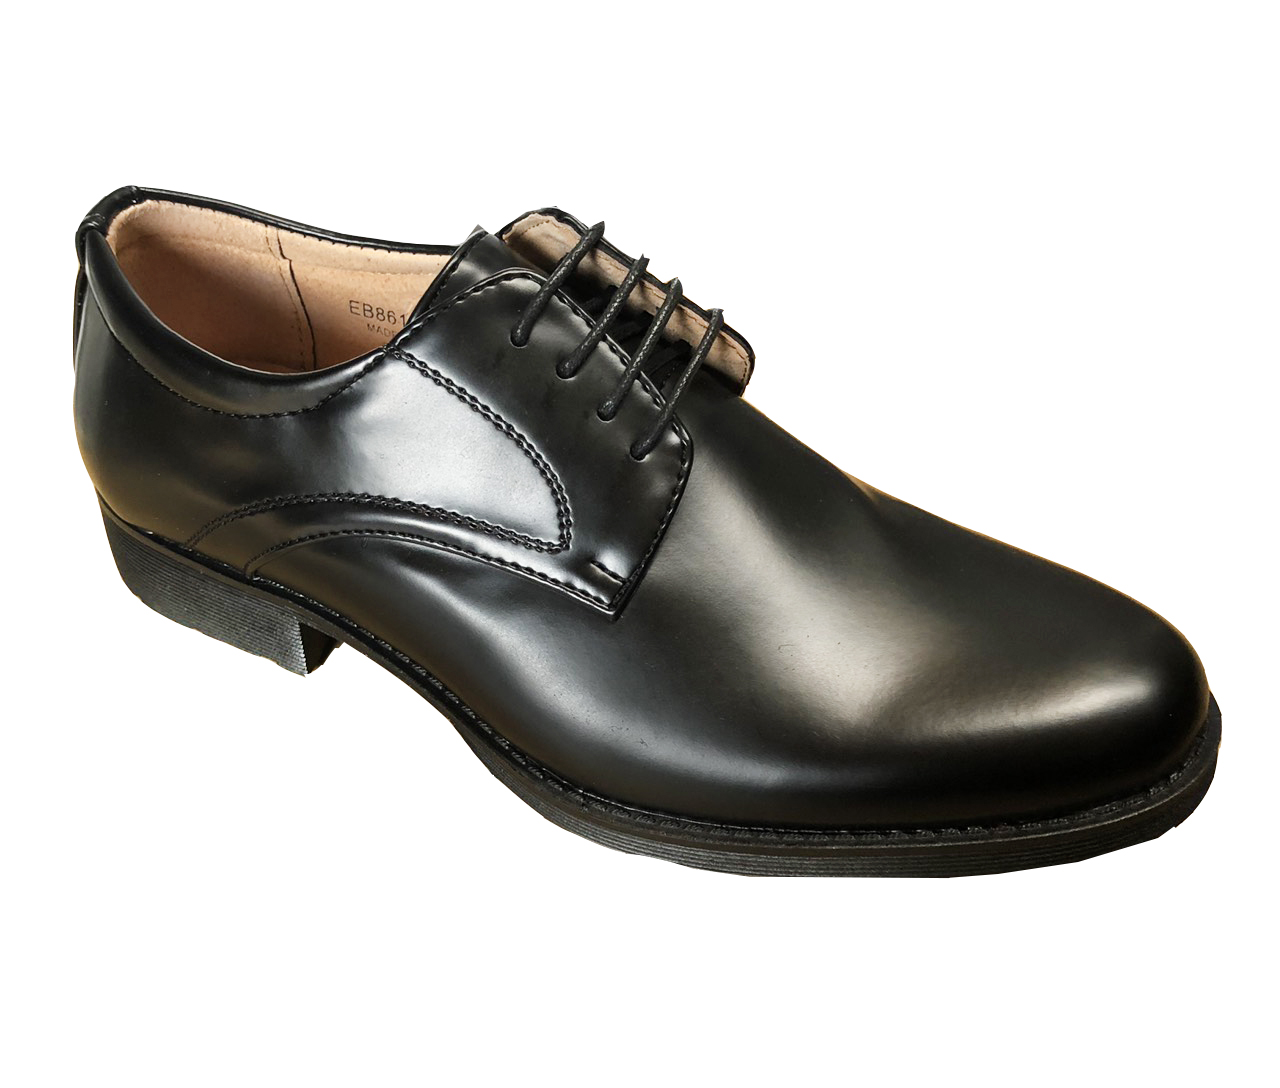 Mens Smart Shoes, 黑色-26.5cm, large